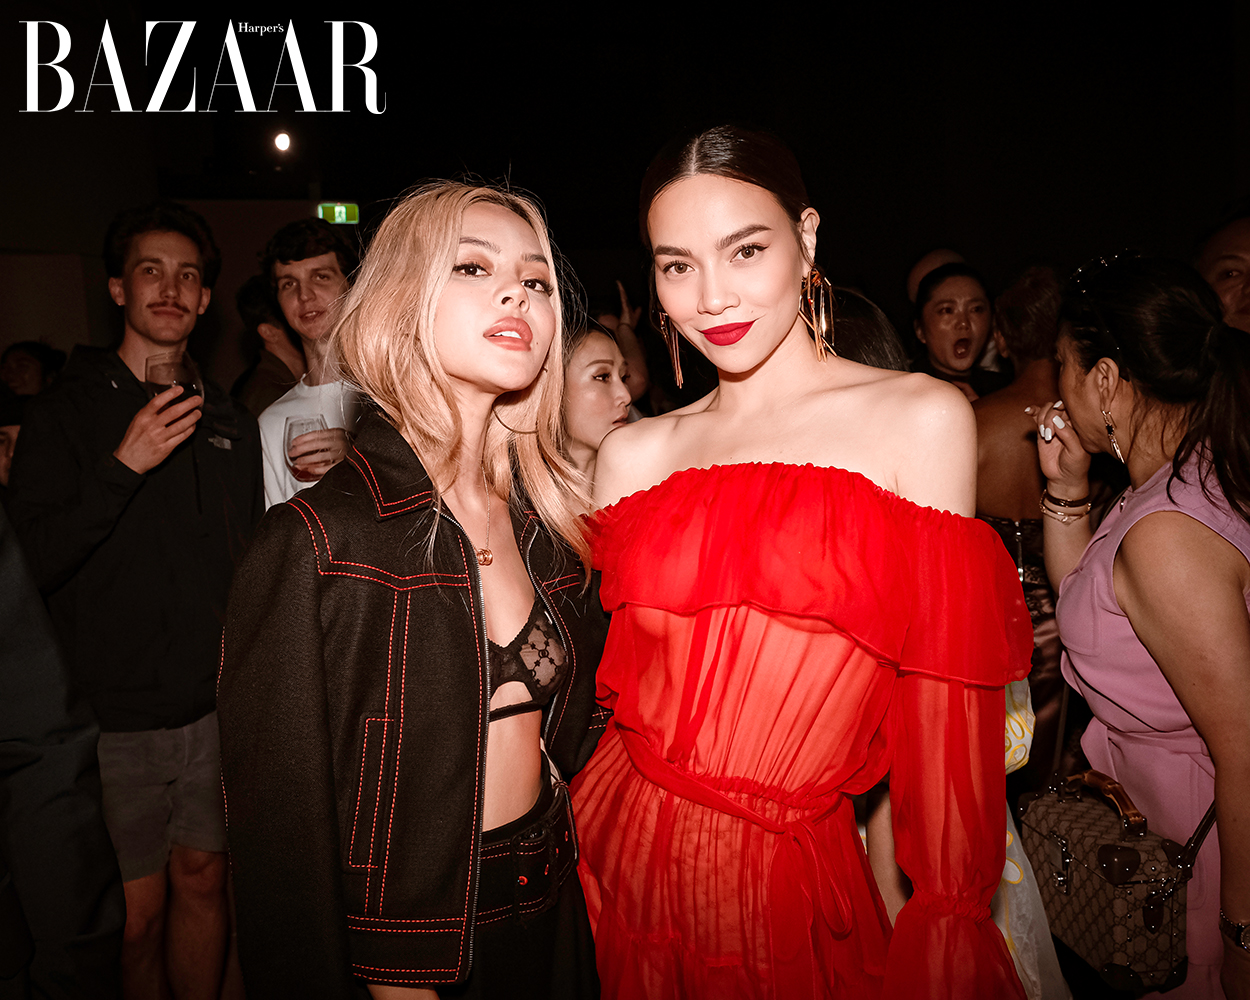  Harper's Bazaar_Hồ Ngọc Hà và Kim Lý dự Gucci_04